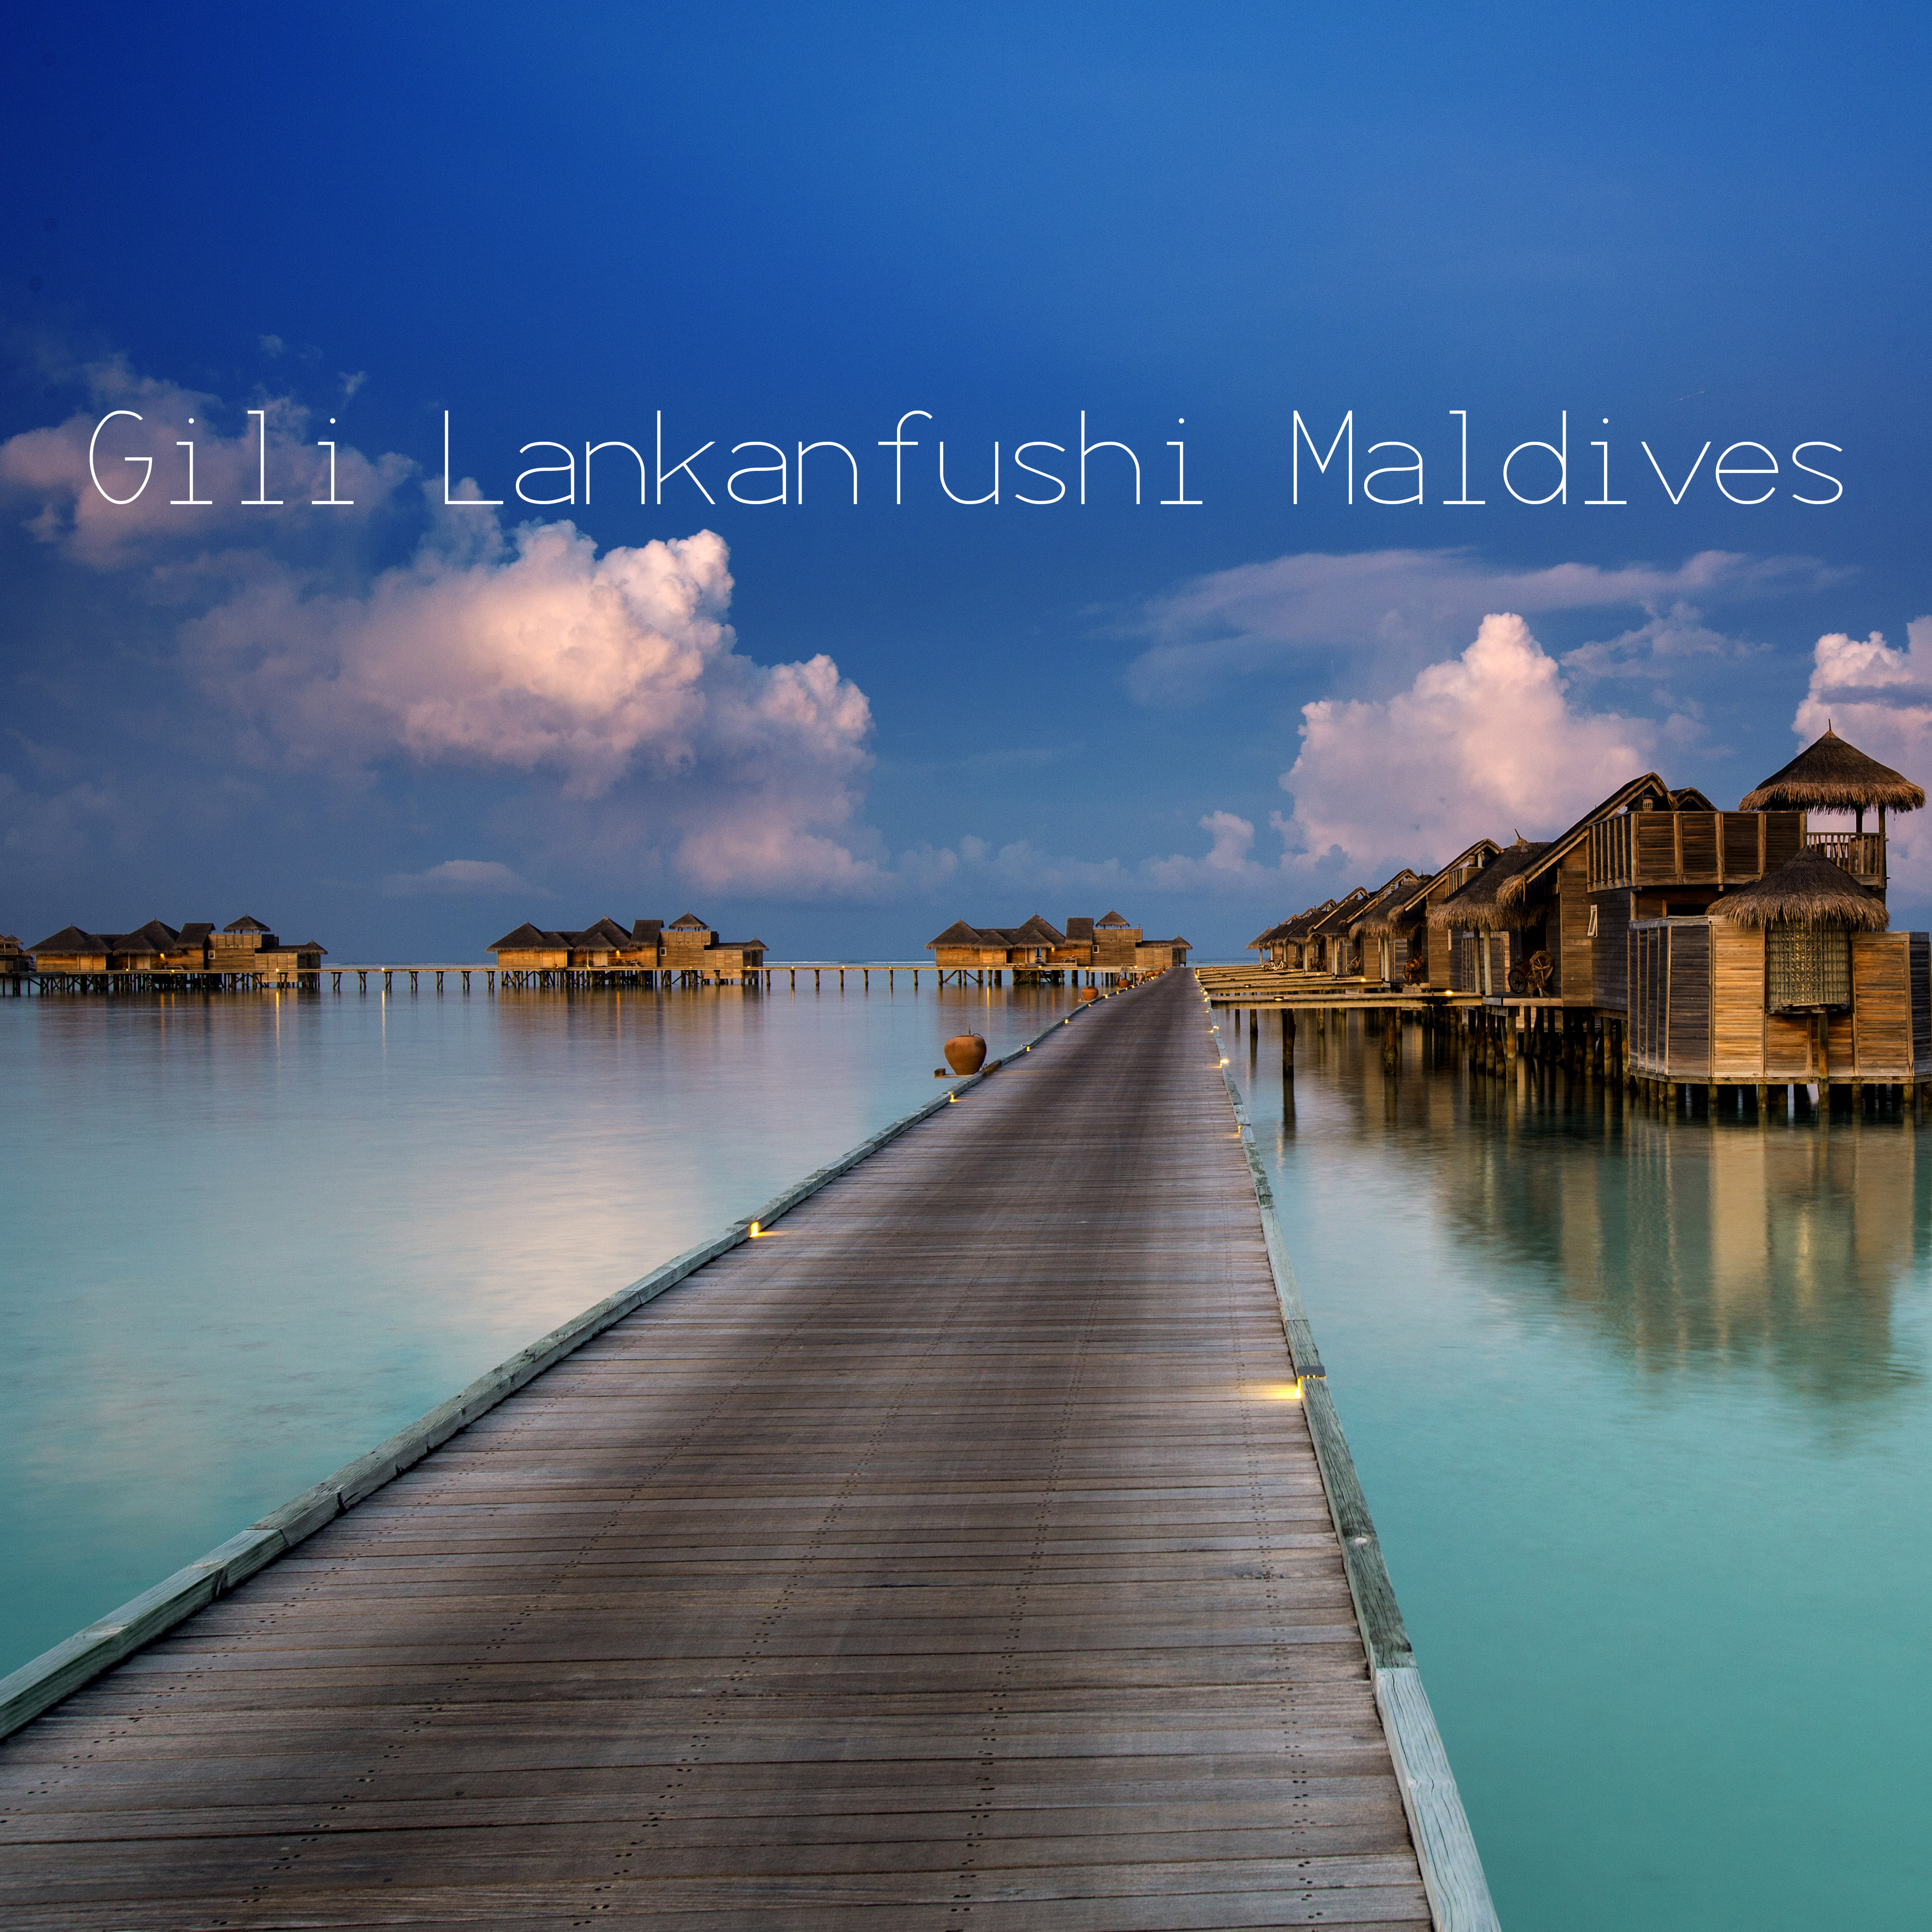 พาชม “Gili Lankanfushi Maldives” 1 ในรีสอร์ทที่ดีที่สุดของโลก